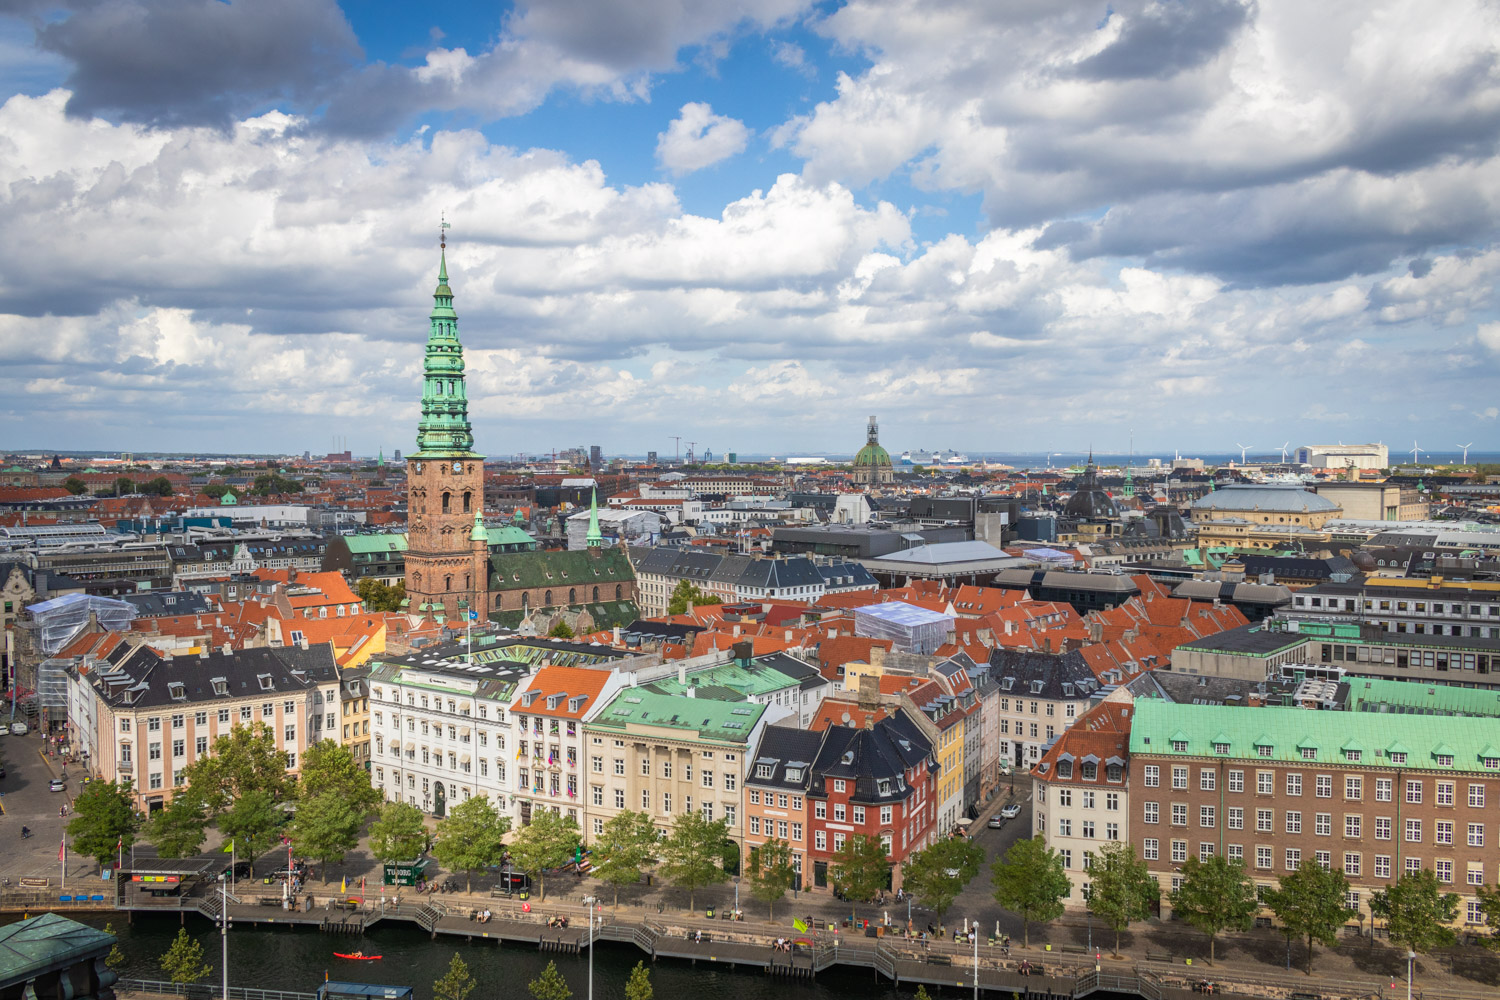 Uitzicht over Kopenhagen vanaf de toren van Christiansborg